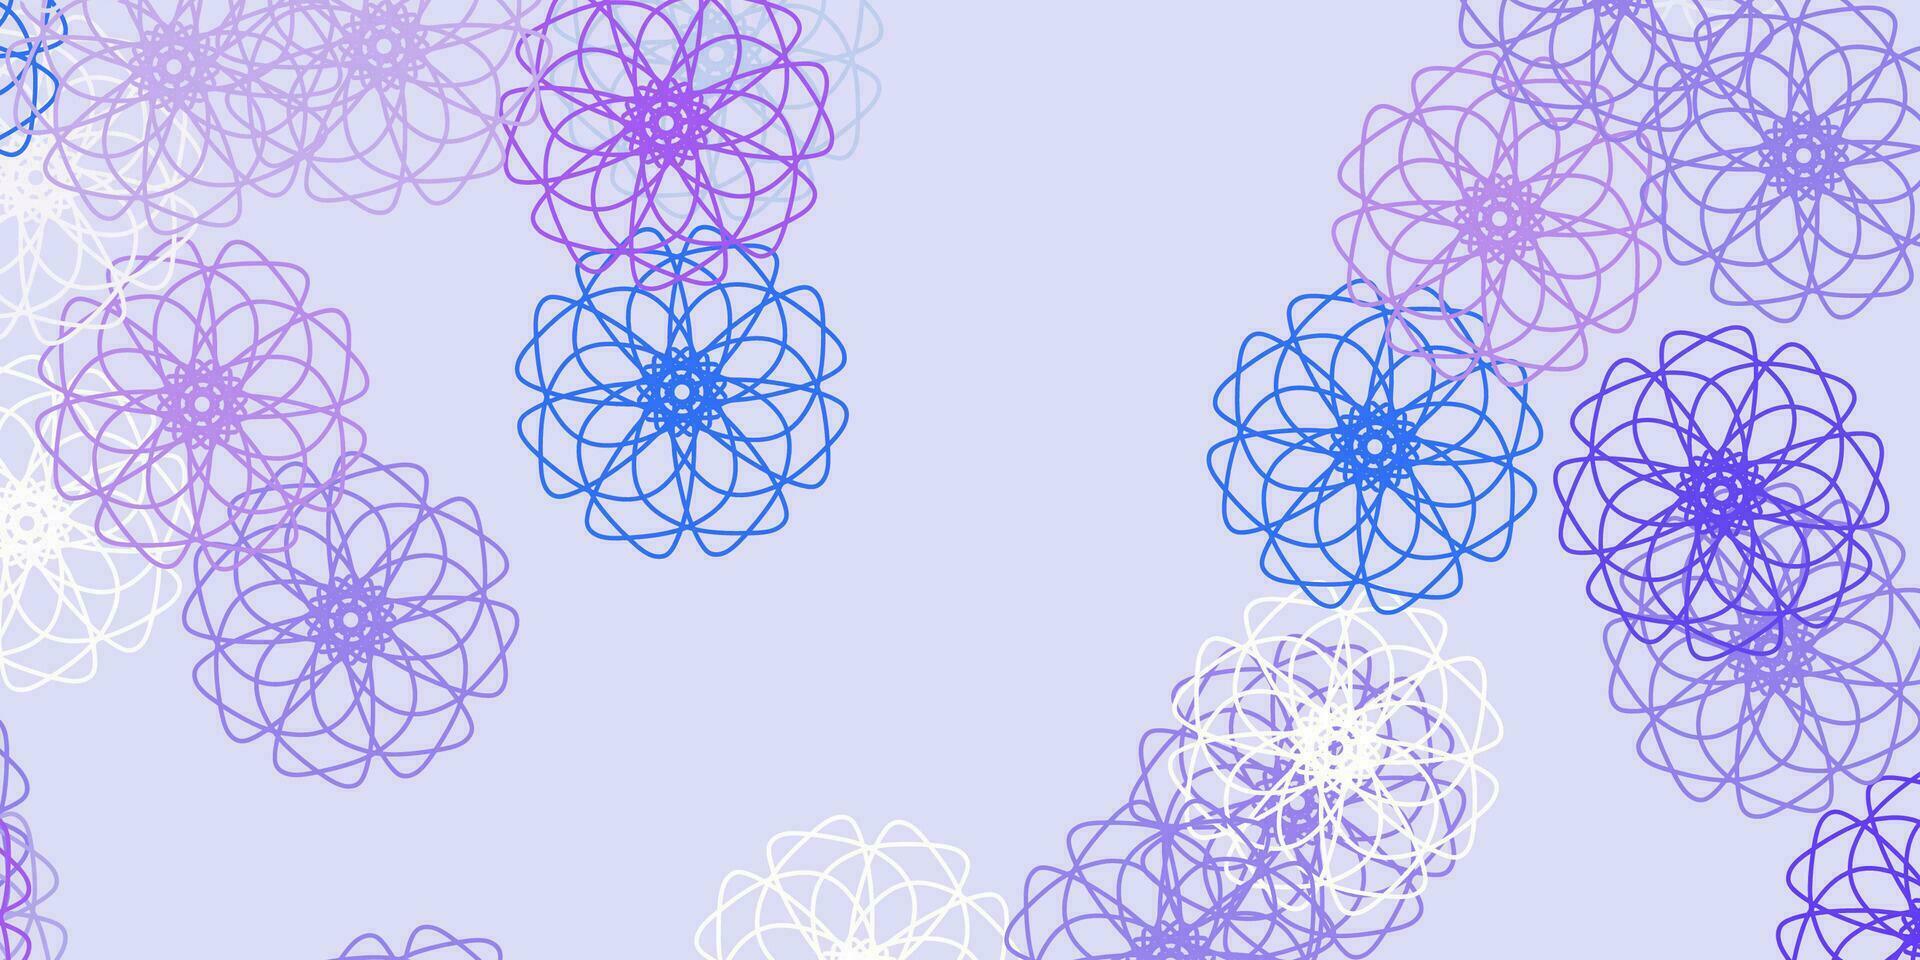 modello doodle vettoriale viola chiaro con fiori.